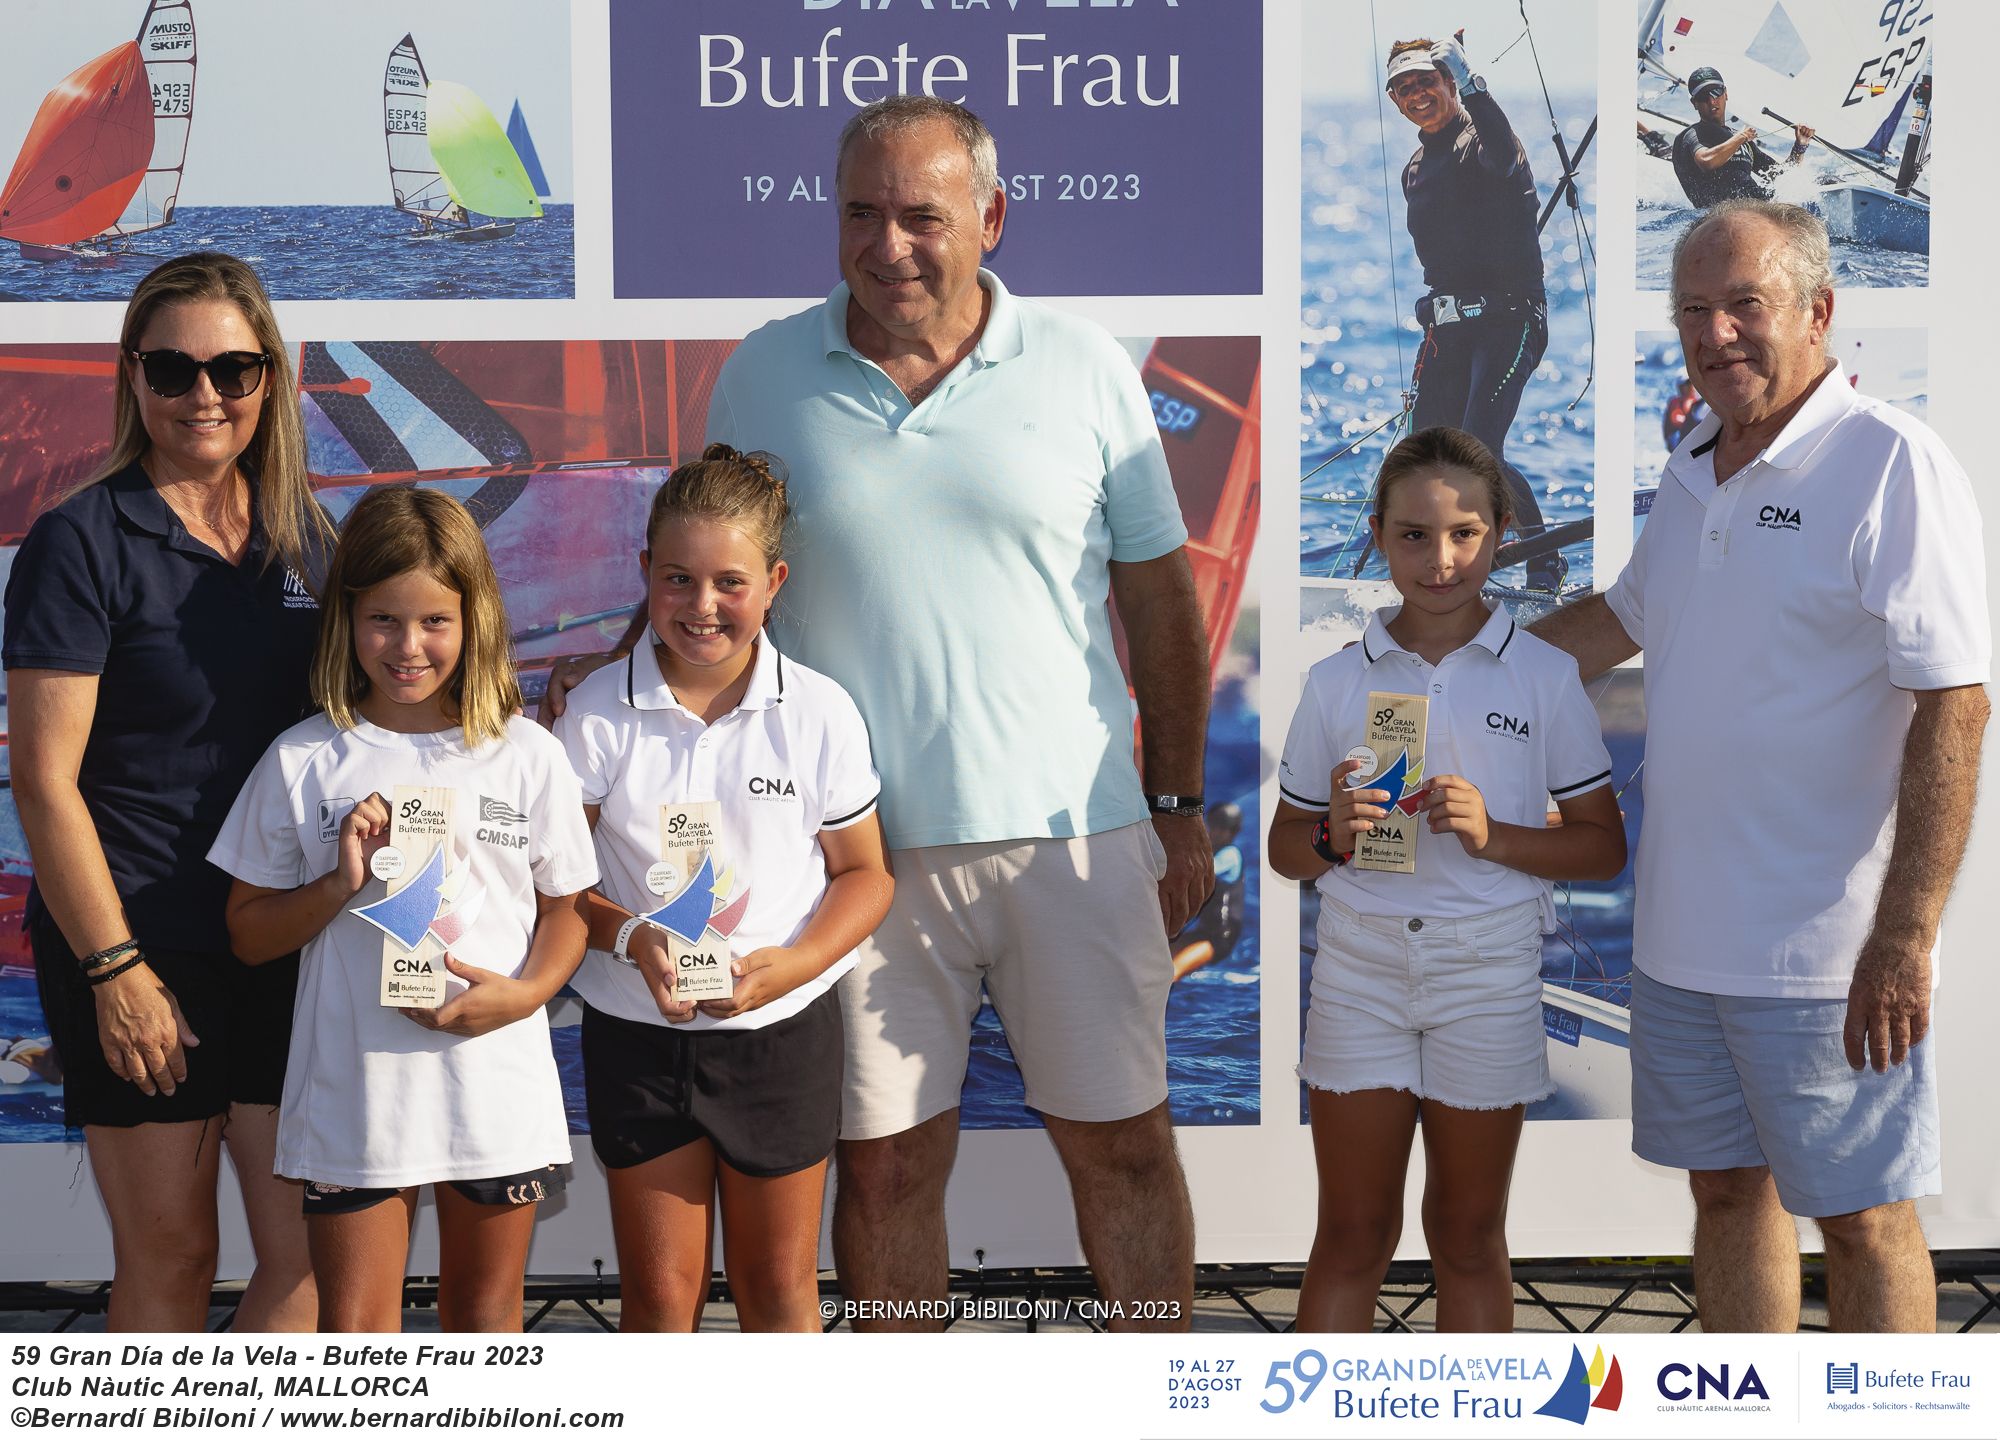 Entrega de trofeos de la regata Bufete Frau - Gran Día de la Vela